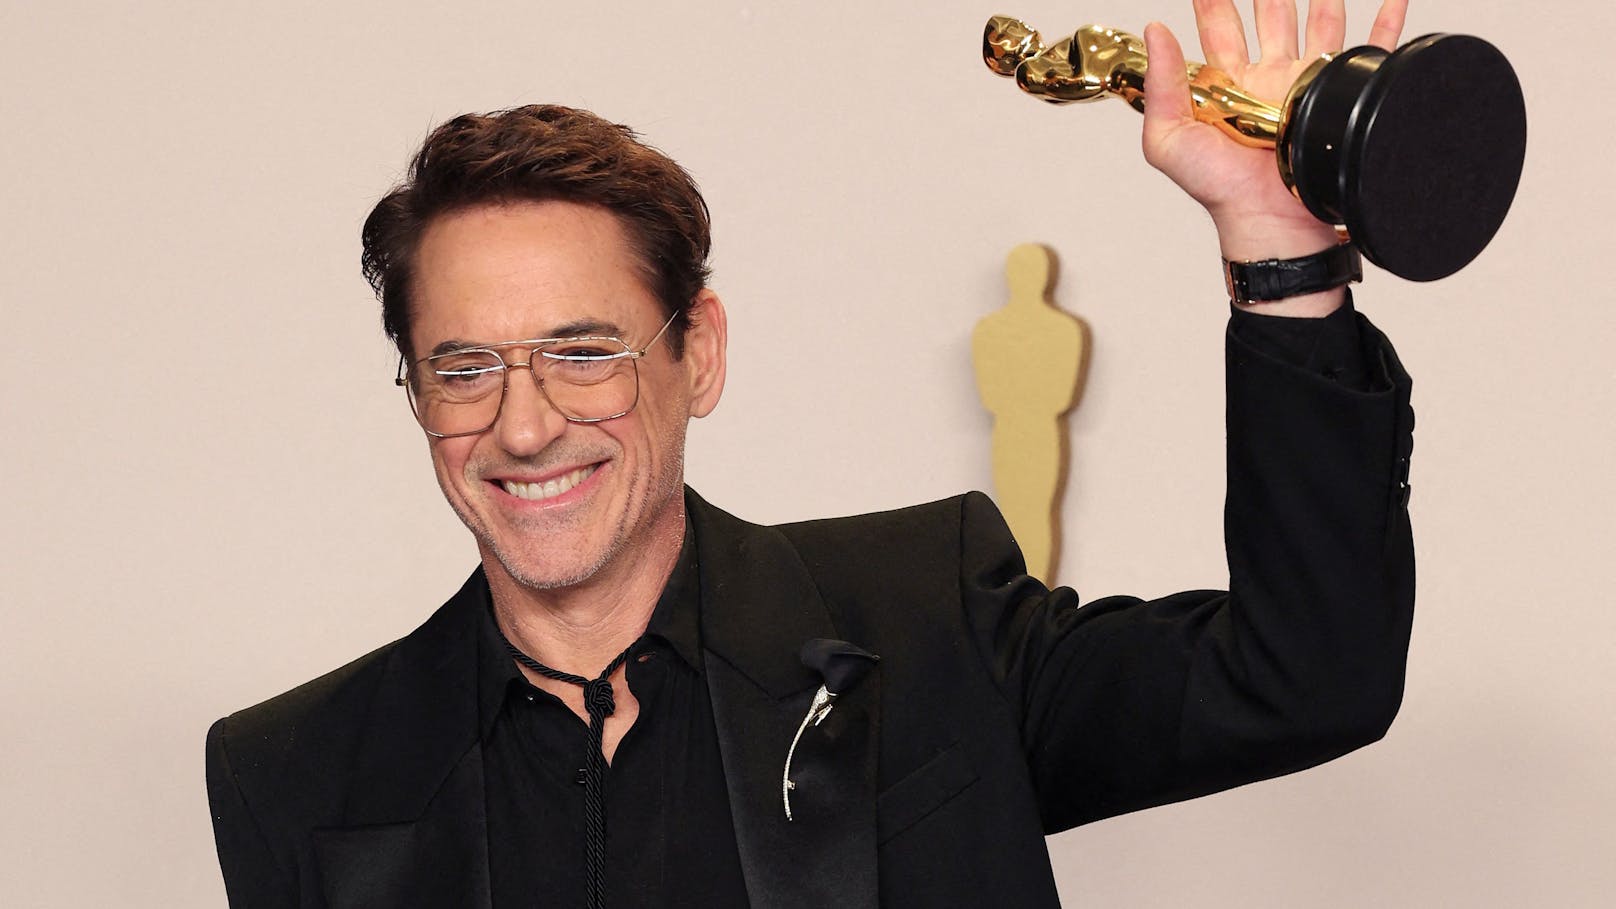 Nach Oscar-Sieg: Beendet Downey Jr. nun seine Karriere?